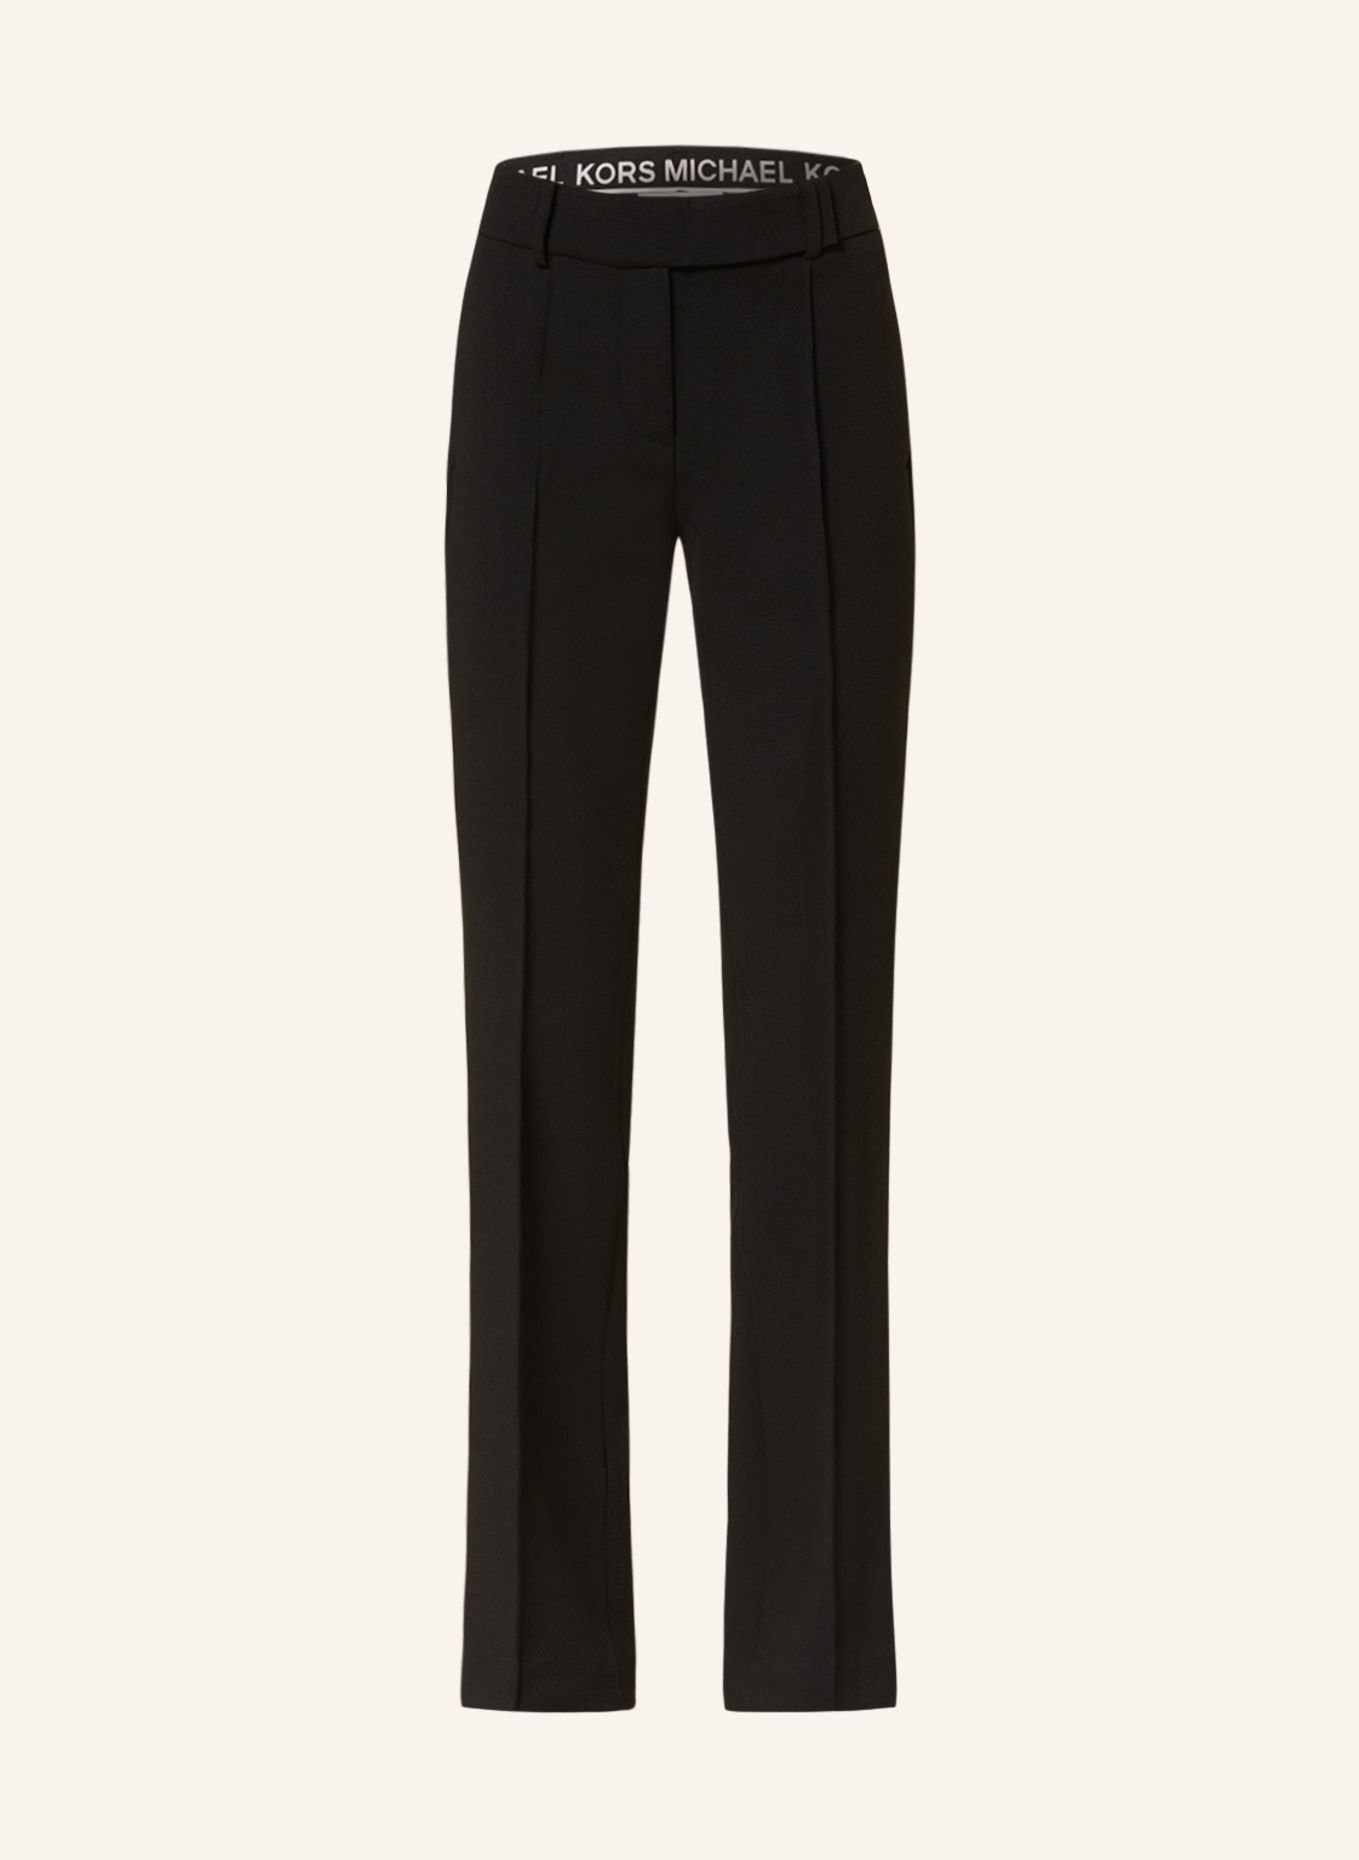 MICHAEL KORS Trousers, Color: BLACK (Image 1)